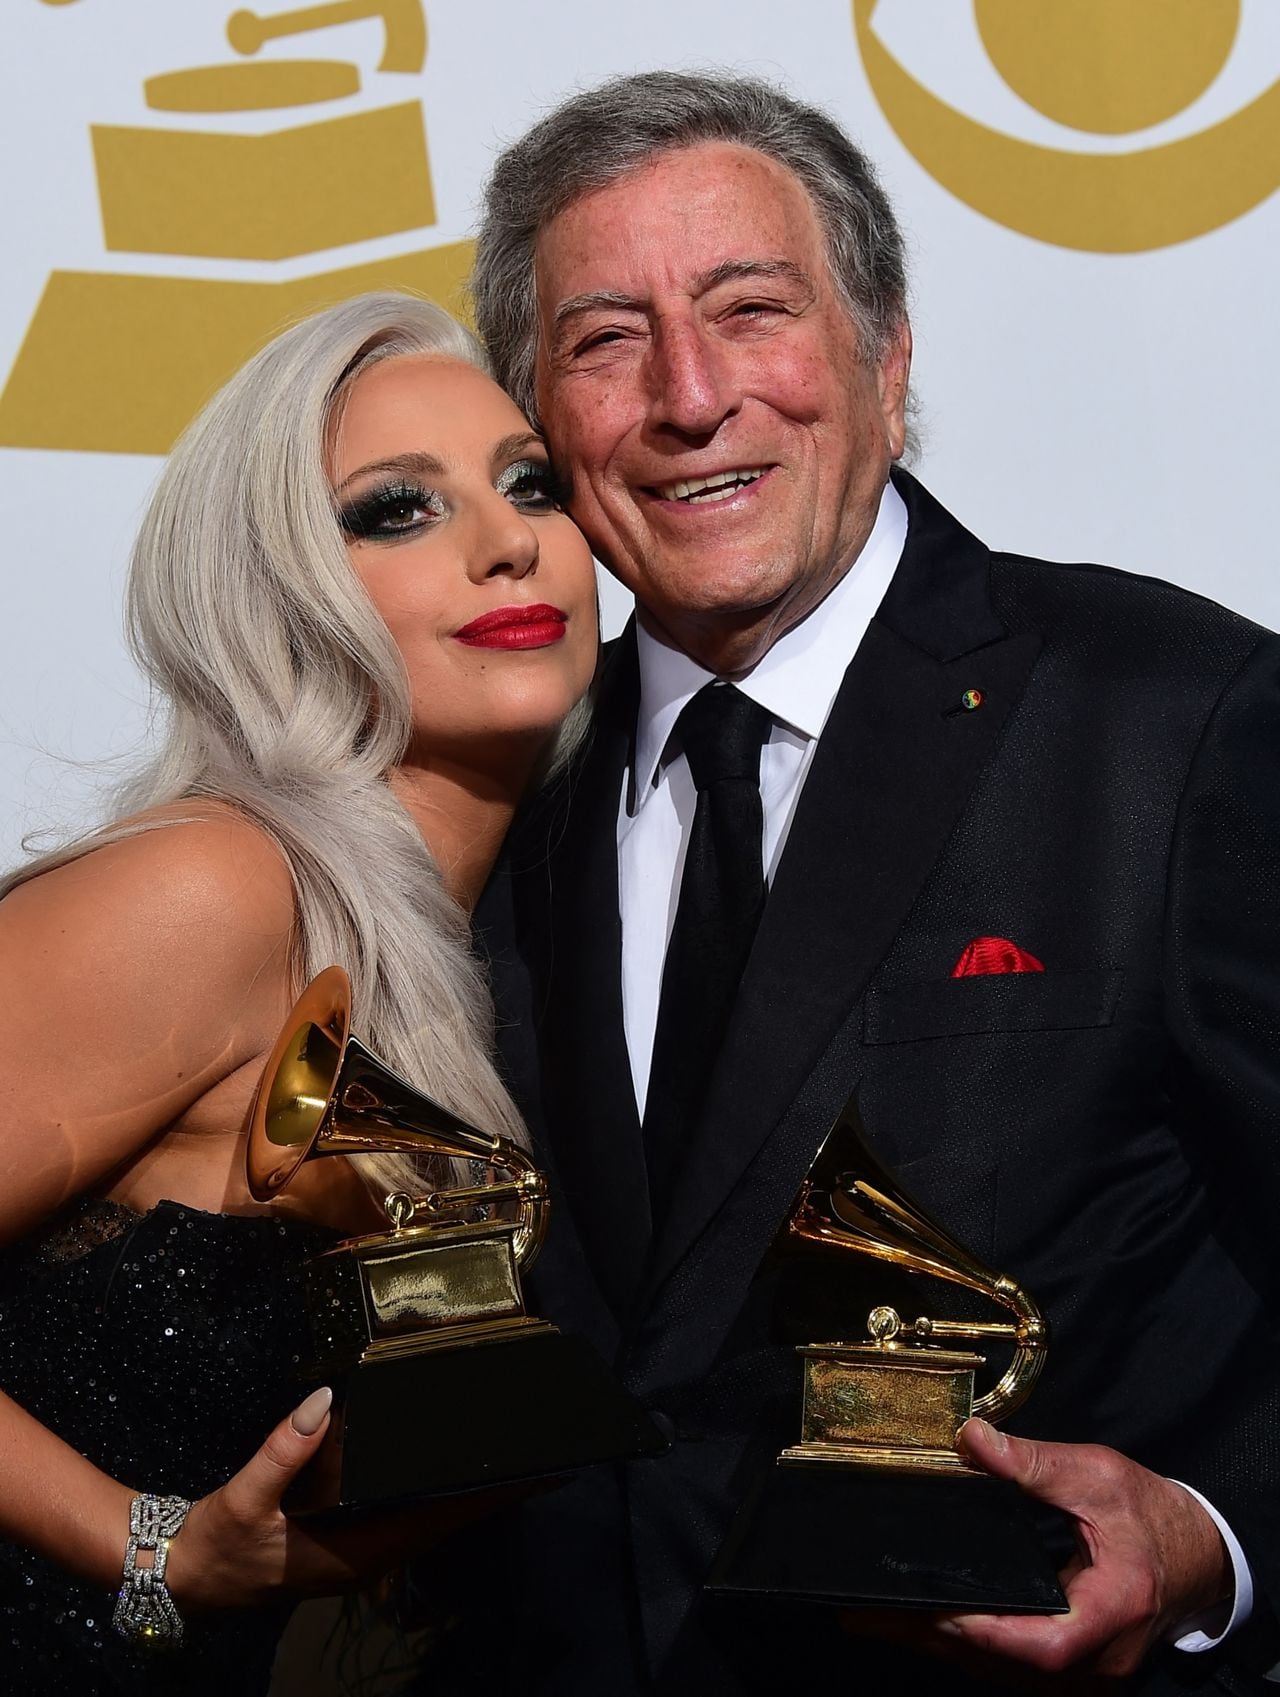 Tony Bennett y Lady Gaga grabaron a dúo Cheek to Cheek, un álbum de clásicos que se alzó con el número 1 en la lista estadounidense